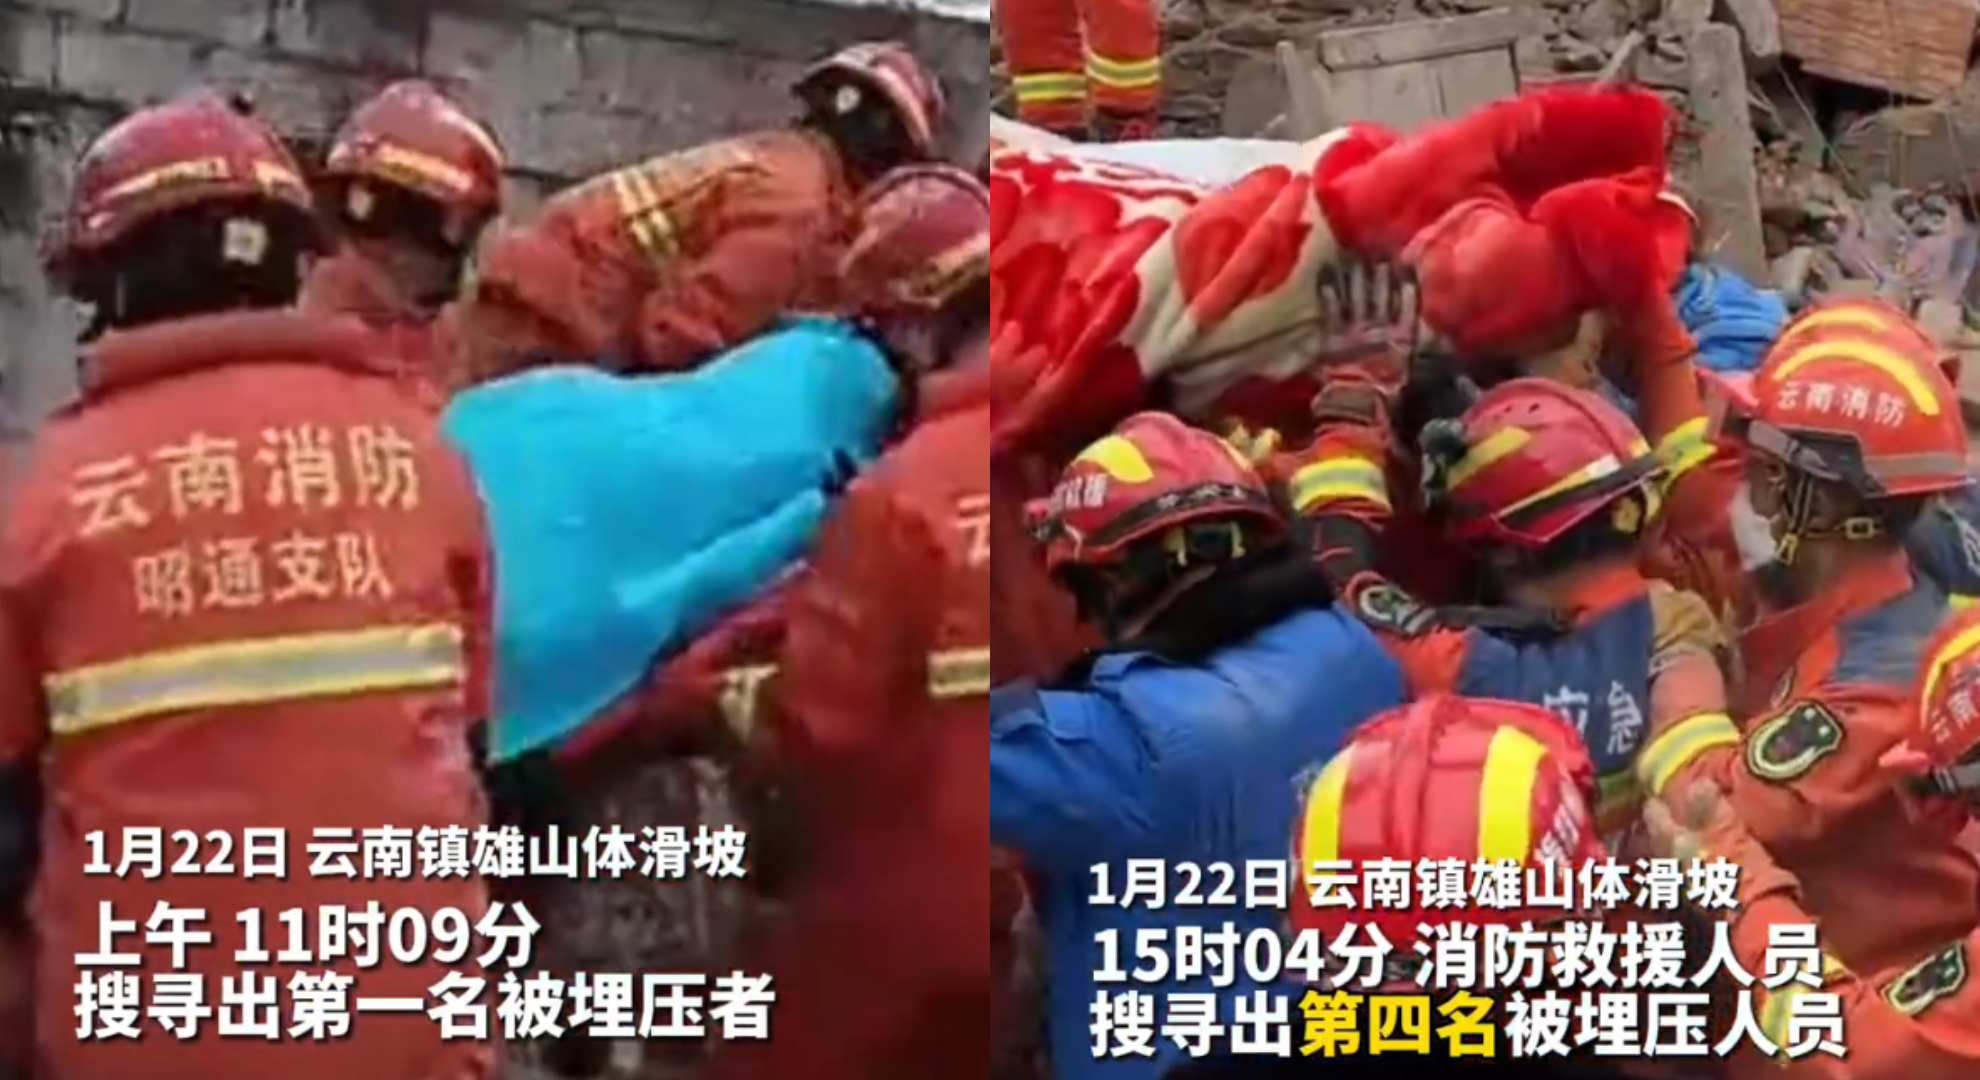 雲南山崩災害驚傳 47人遭活埋 救援持續進行